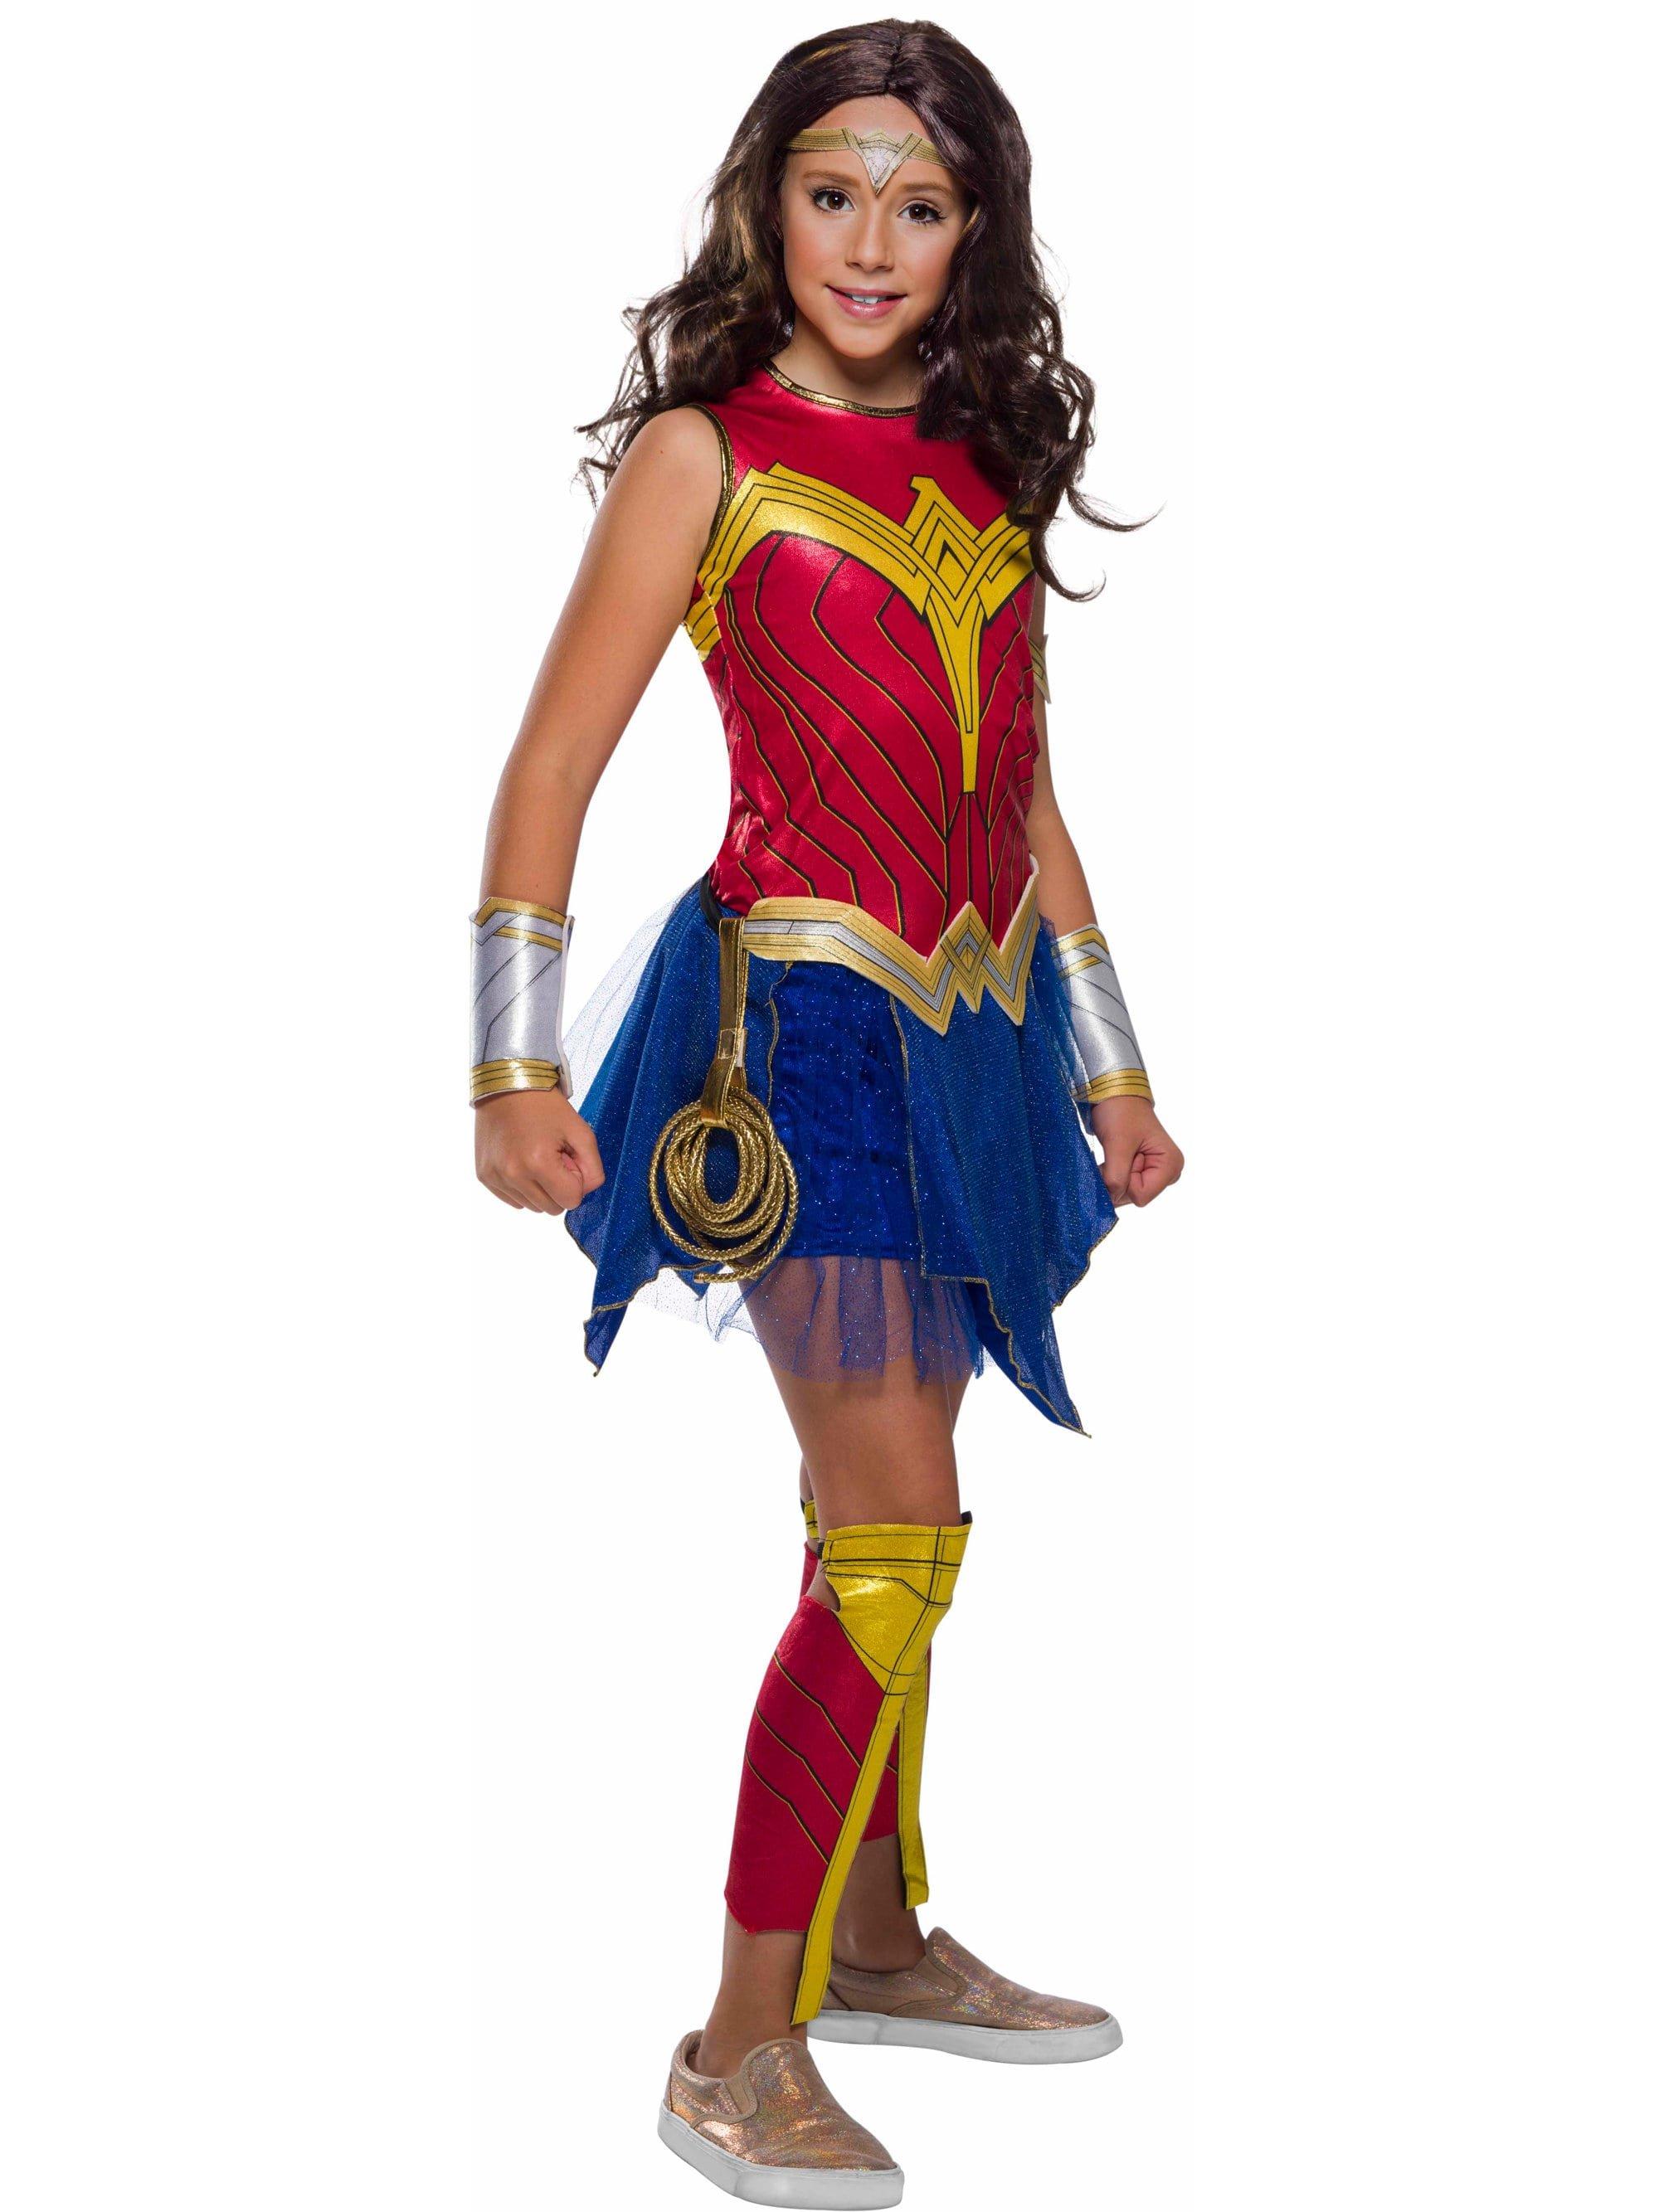 Wonder Woman Lasso Svg - 174+ SVG Cut File